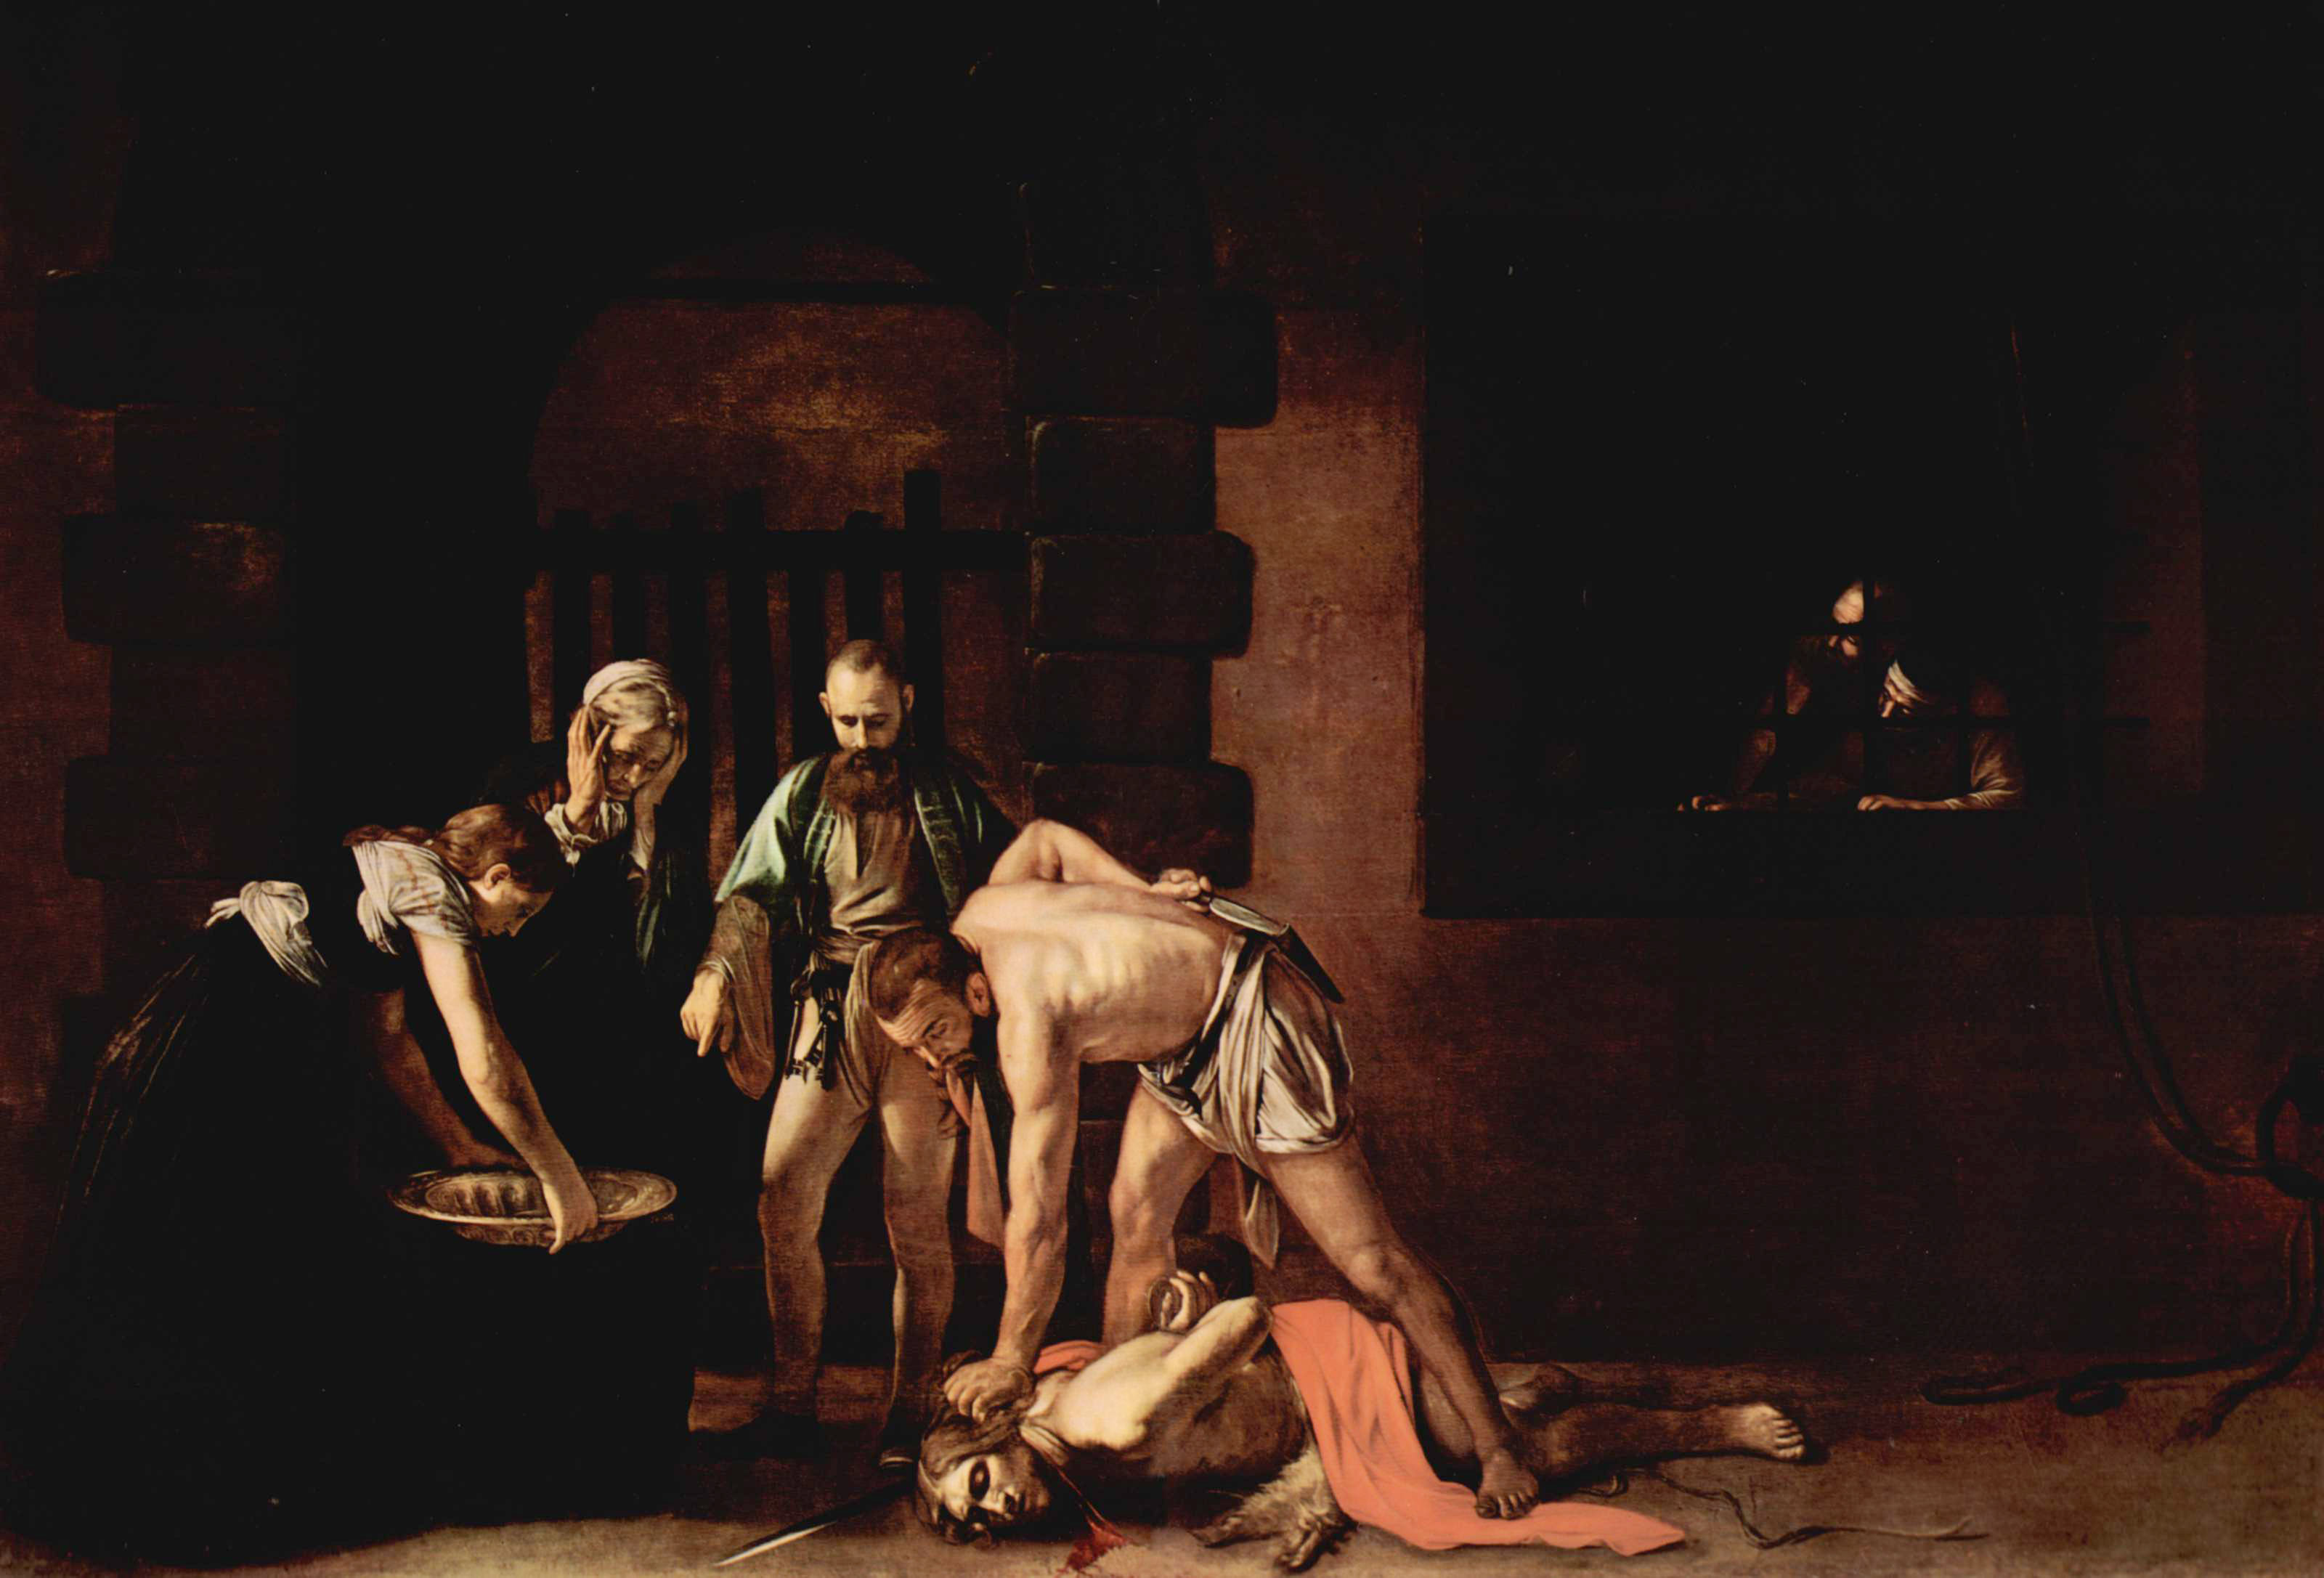 Микеланджело Меризи да Караваджо. "Усекновение главы Иоанна Крестителя". Около 1606.